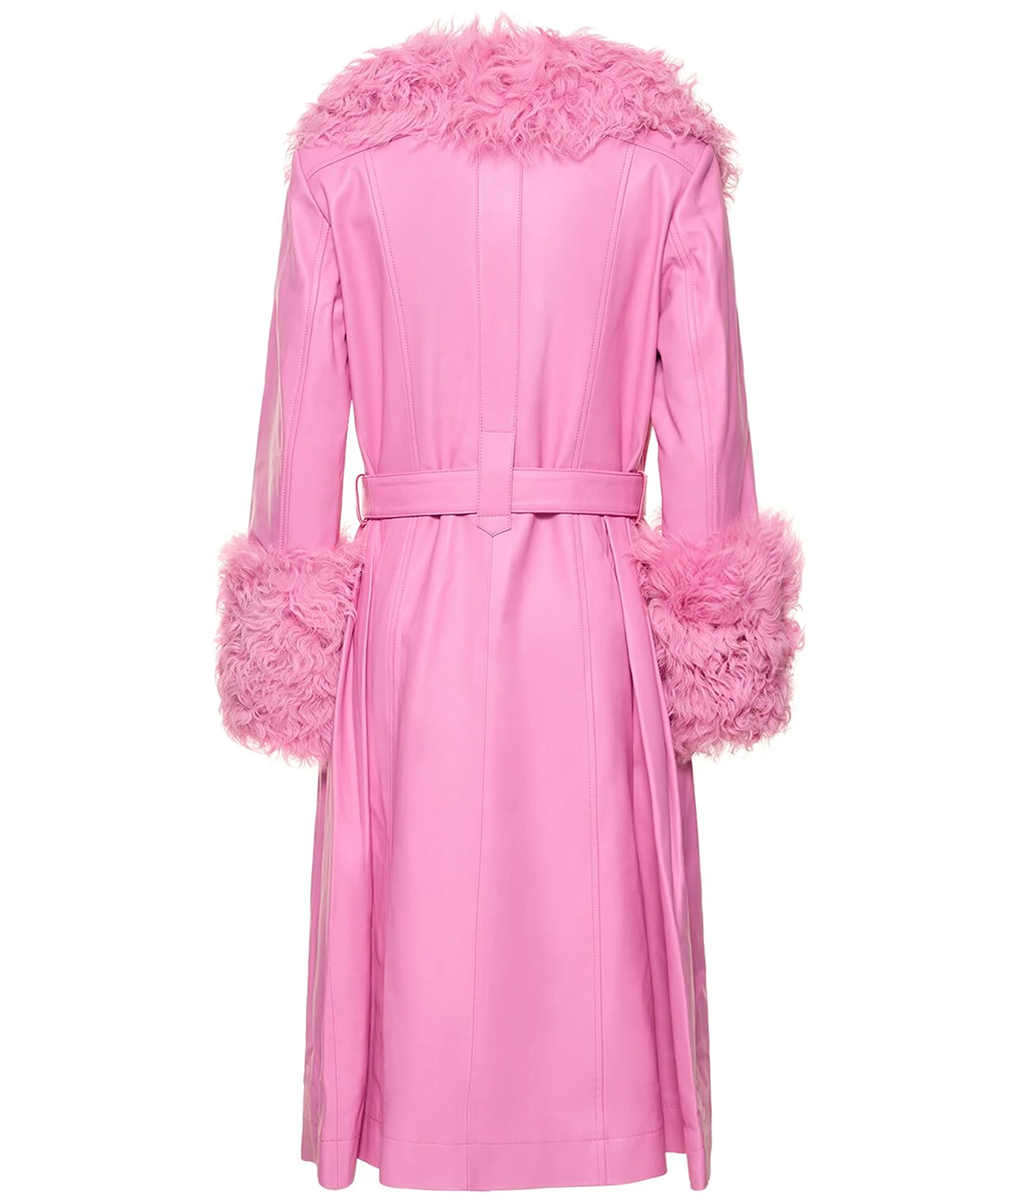 Elle King Nashville Big Bash Pink Fur Coat (5)